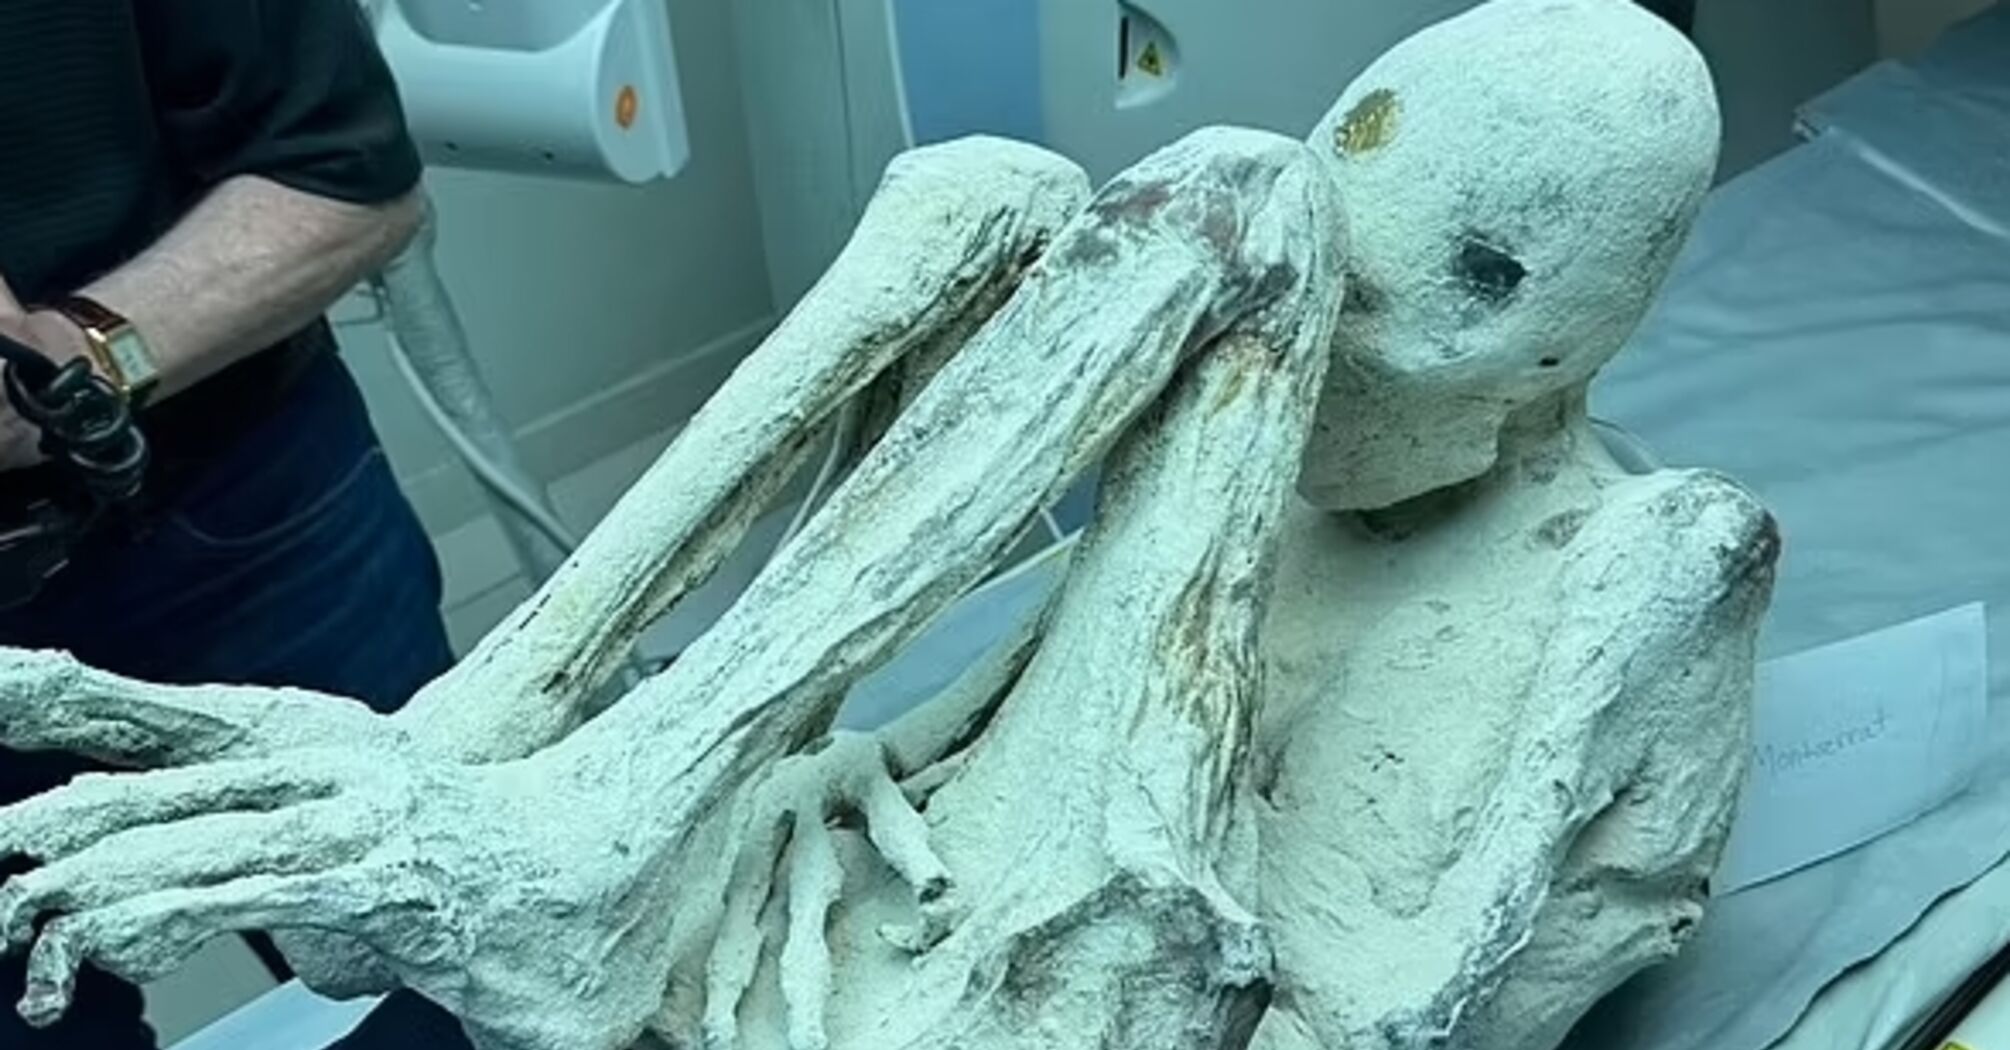 Дослідник знайшов тіла неземних істот і вимагає відправити їх на аналіз (фото)